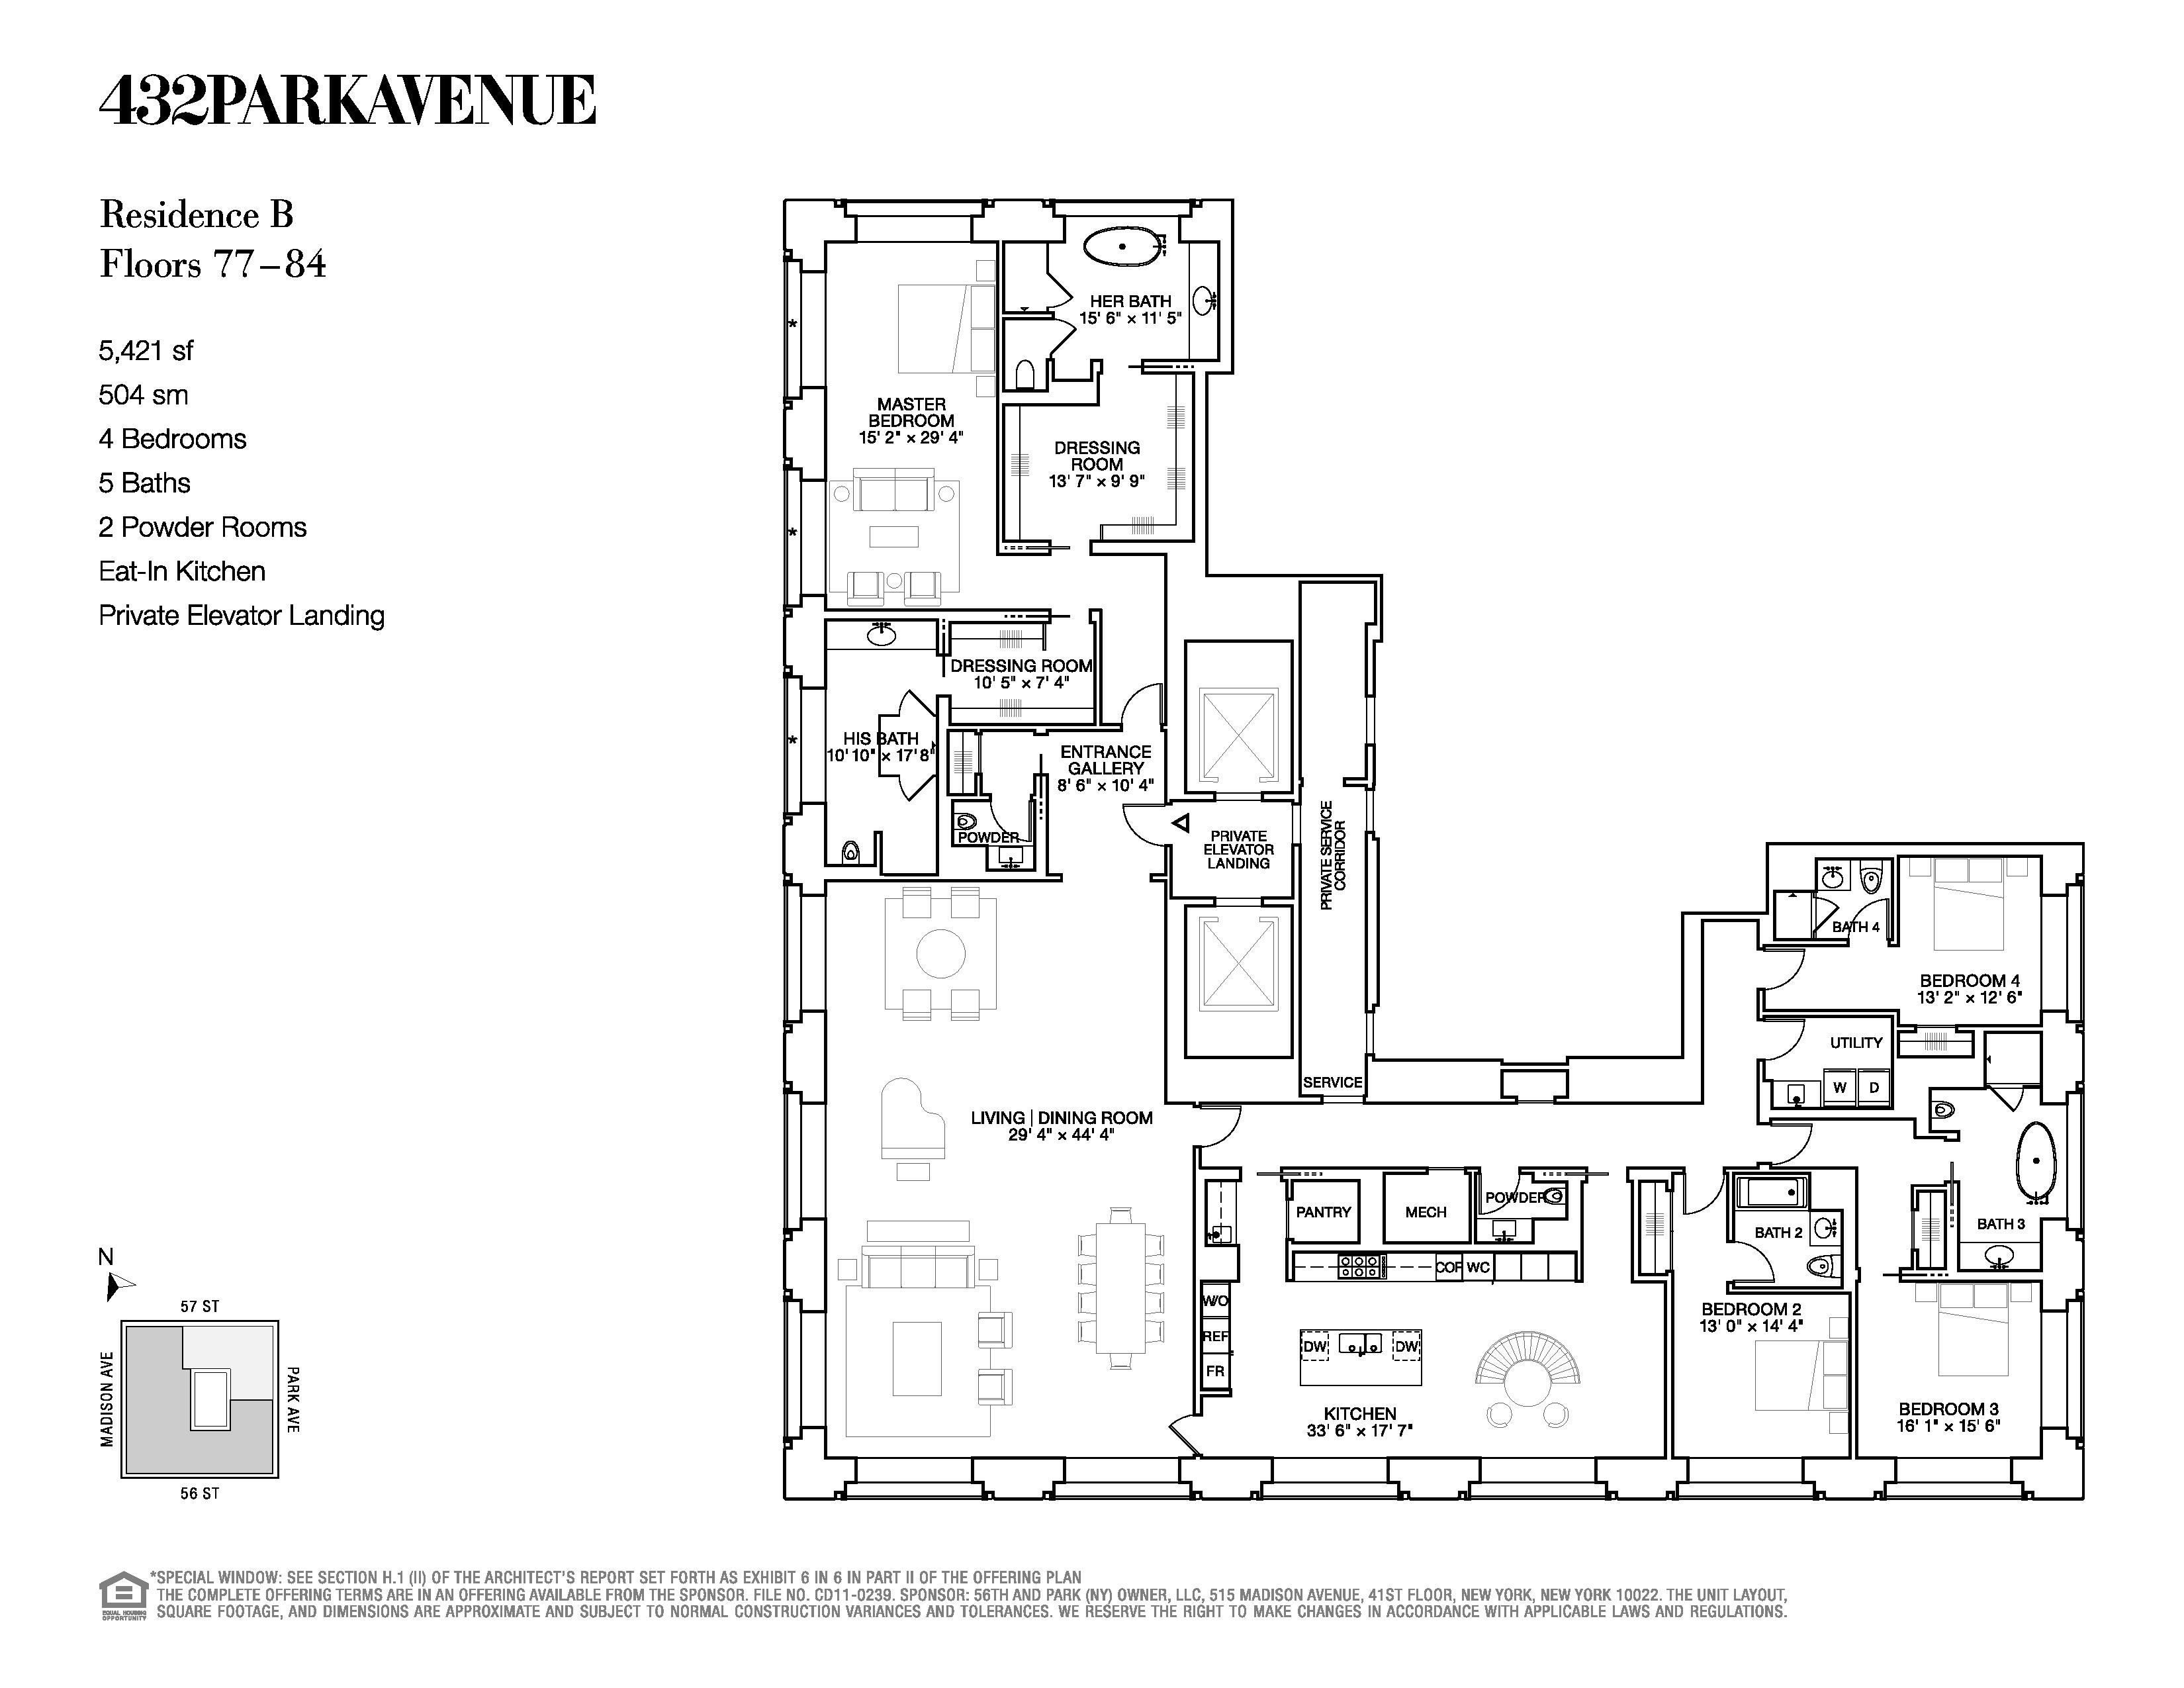 432 Park Avenue, 504 kvm House floor plans, Floor plans